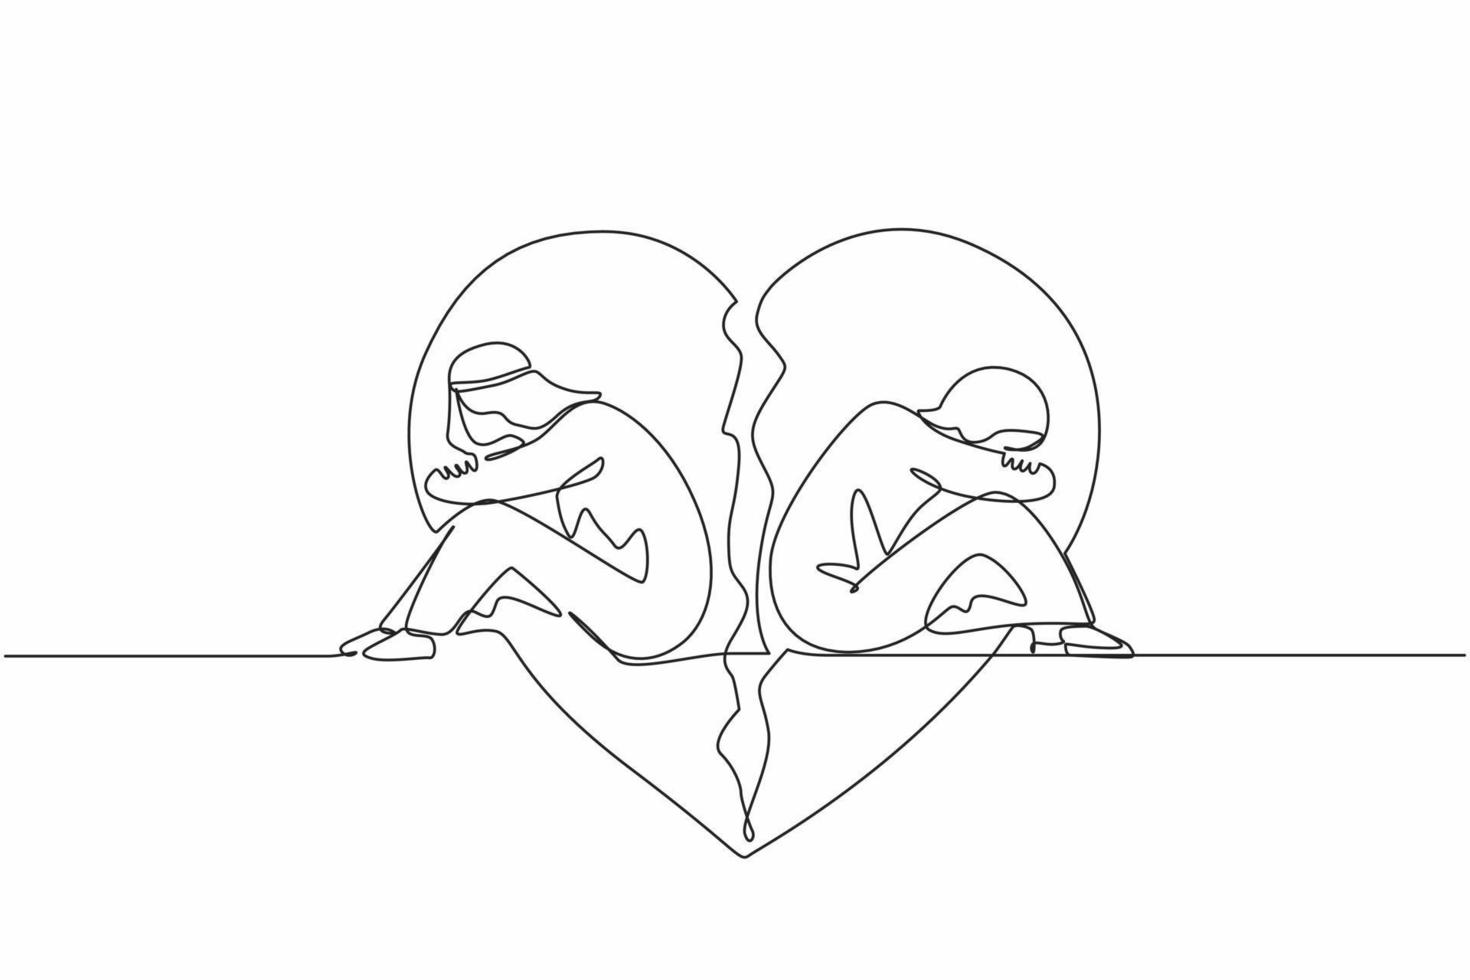 une seule ligne dessinant un couple d'homme et de femme arabes, assis dos à dos, tristes et en colère l'un contre l'autre. rupture, problèmes relationnels, cœur brisé, séparation. vecteur de conception de dessin en ligne continue